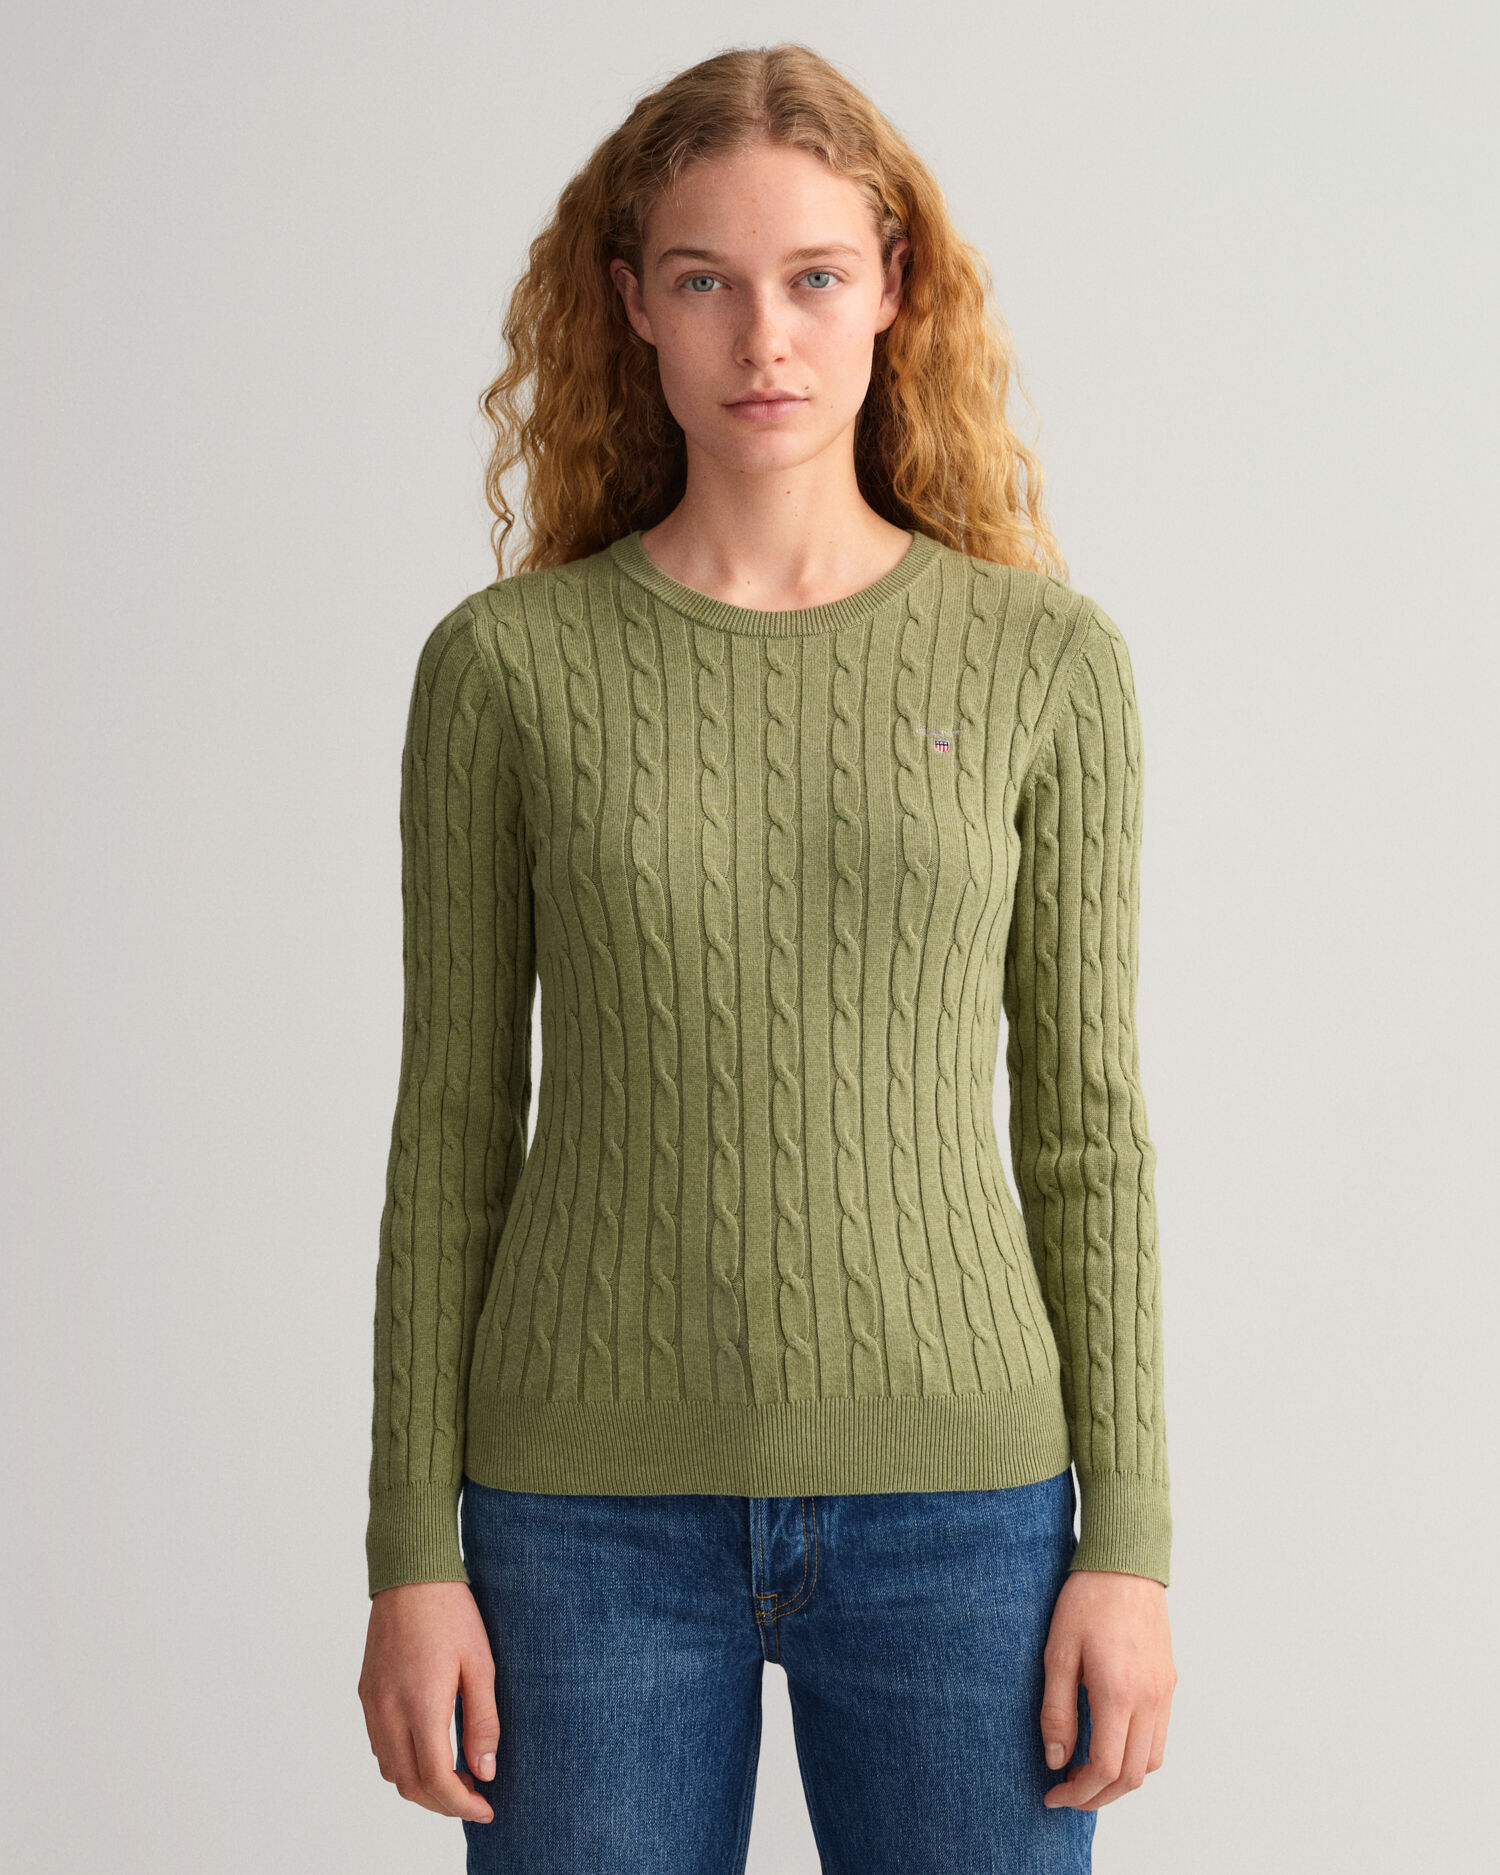 GANT Pullover mit Stretch-Anteil in Lila Damen Pullover und Strickwaren GANT Pullover und Strickwaren 